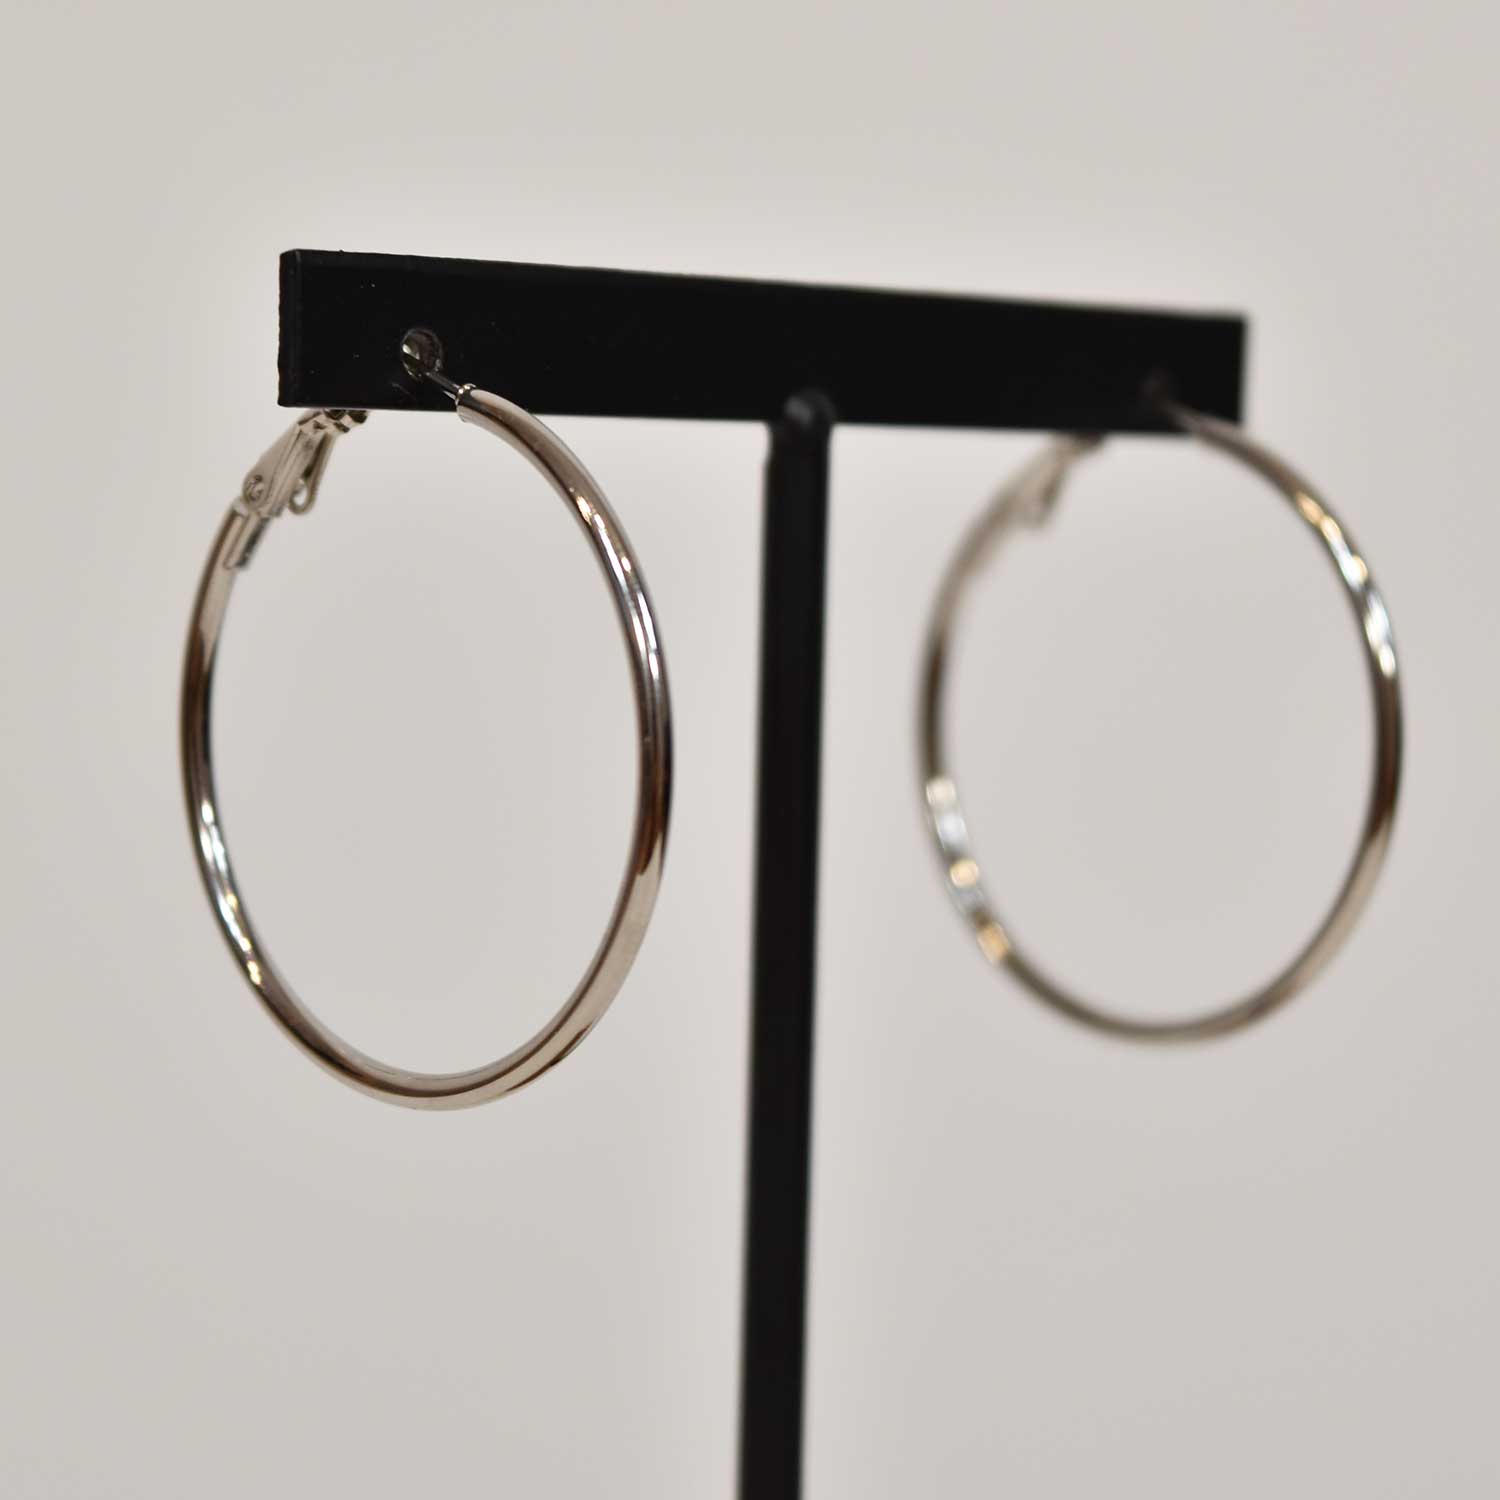 Silvered thin hoop earrings